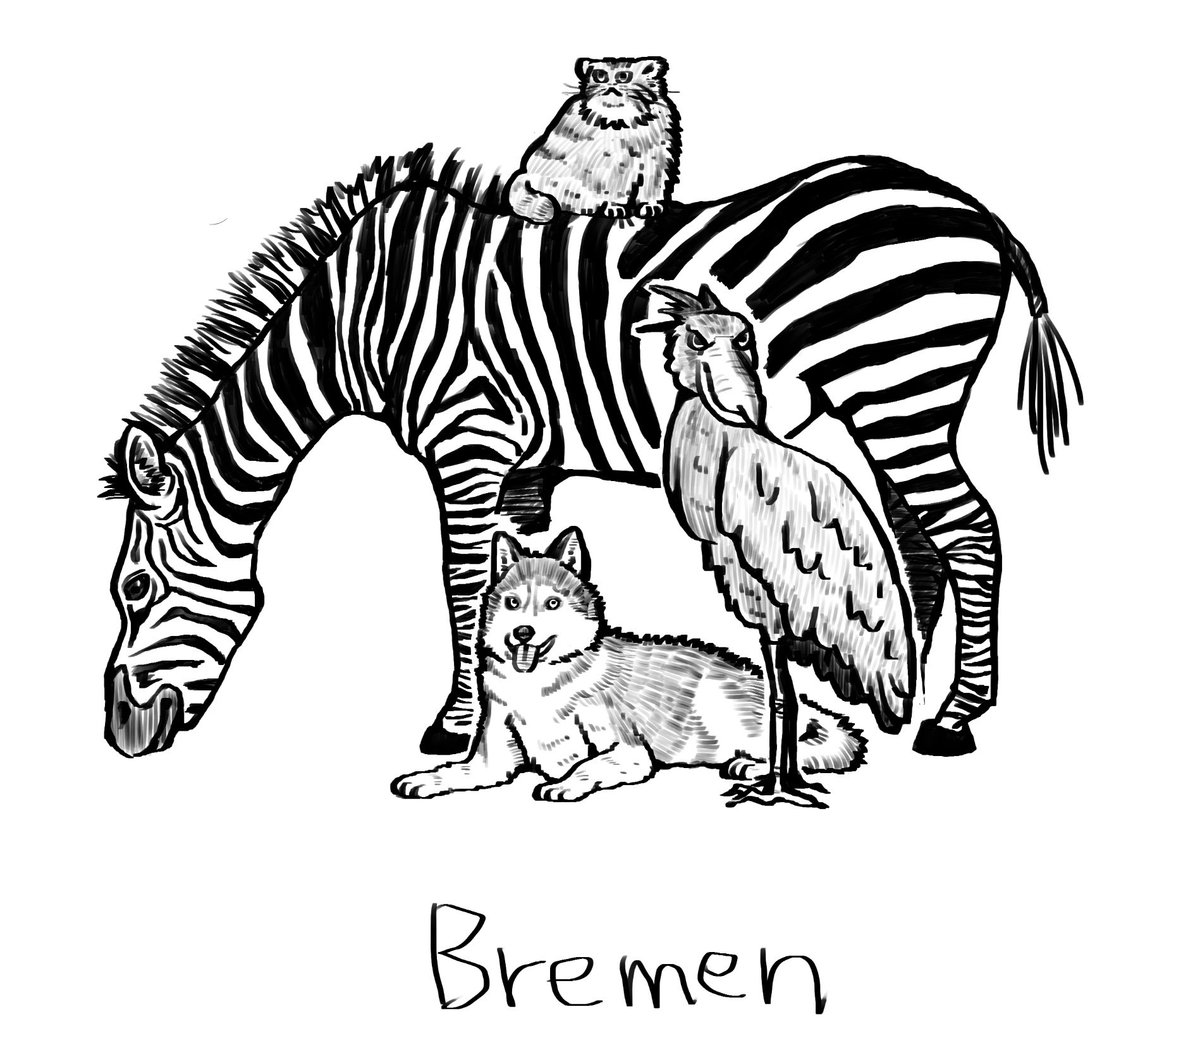 前々からやりたかった、ブレーメンの音楽隊の好きな動物バージョン落書き。描くの難しかったので部分的に写真をトレースしてます。。。 